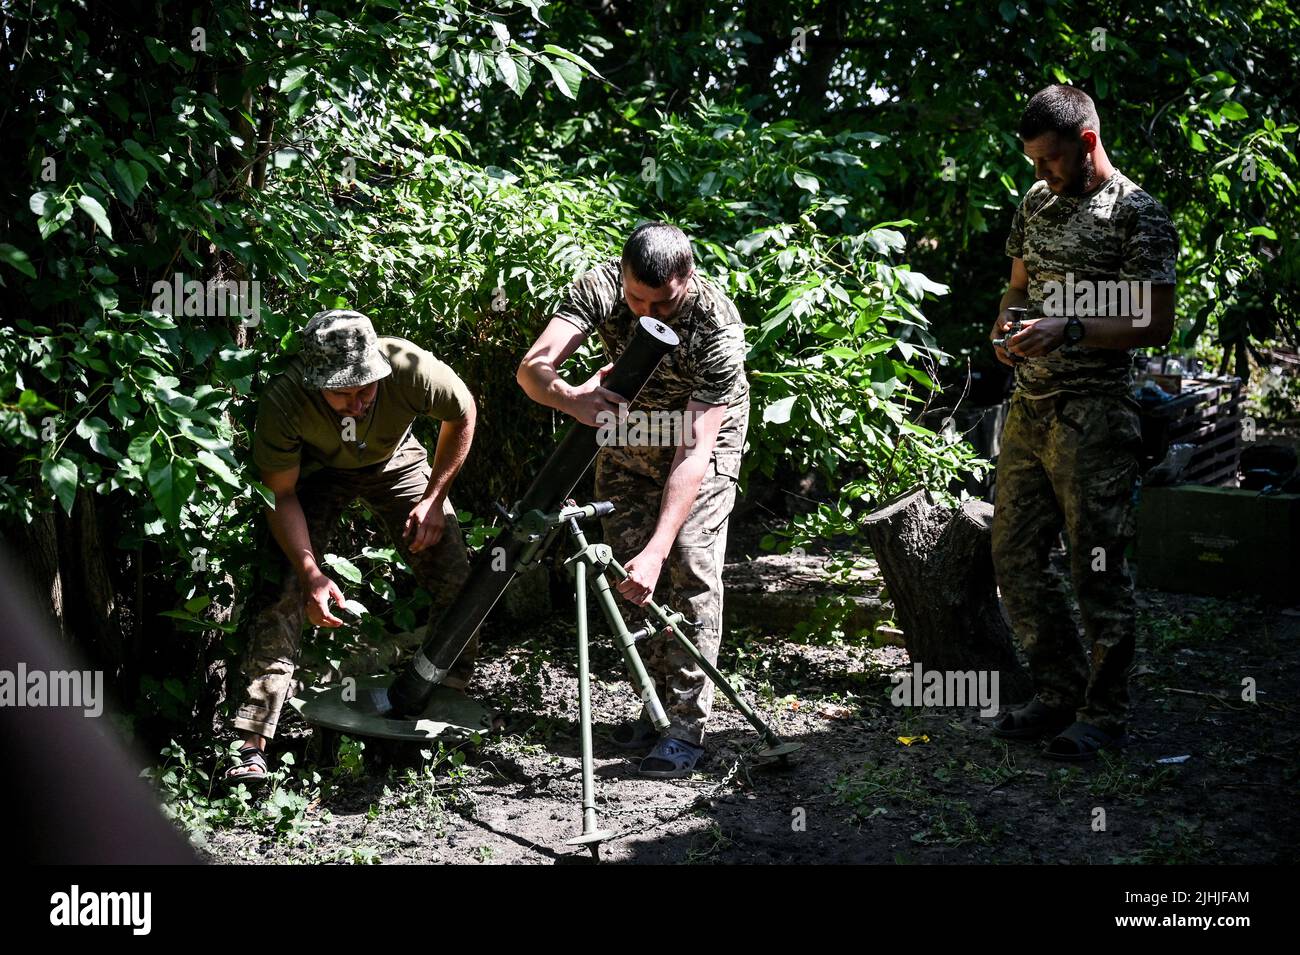 Des membres d'une unité de mortier des Forces de défense territoriales ukrainiennes qui se nommirent la « Légion hutsul » sont photographiés dans la région de Zaporizhjhia, dans le sud-est de l'Ukraine, au 29 juin 2022. Photo de Dmytro Smolyenko/Ukrinform/ABACAPRESS.CCOM Banque D'Images